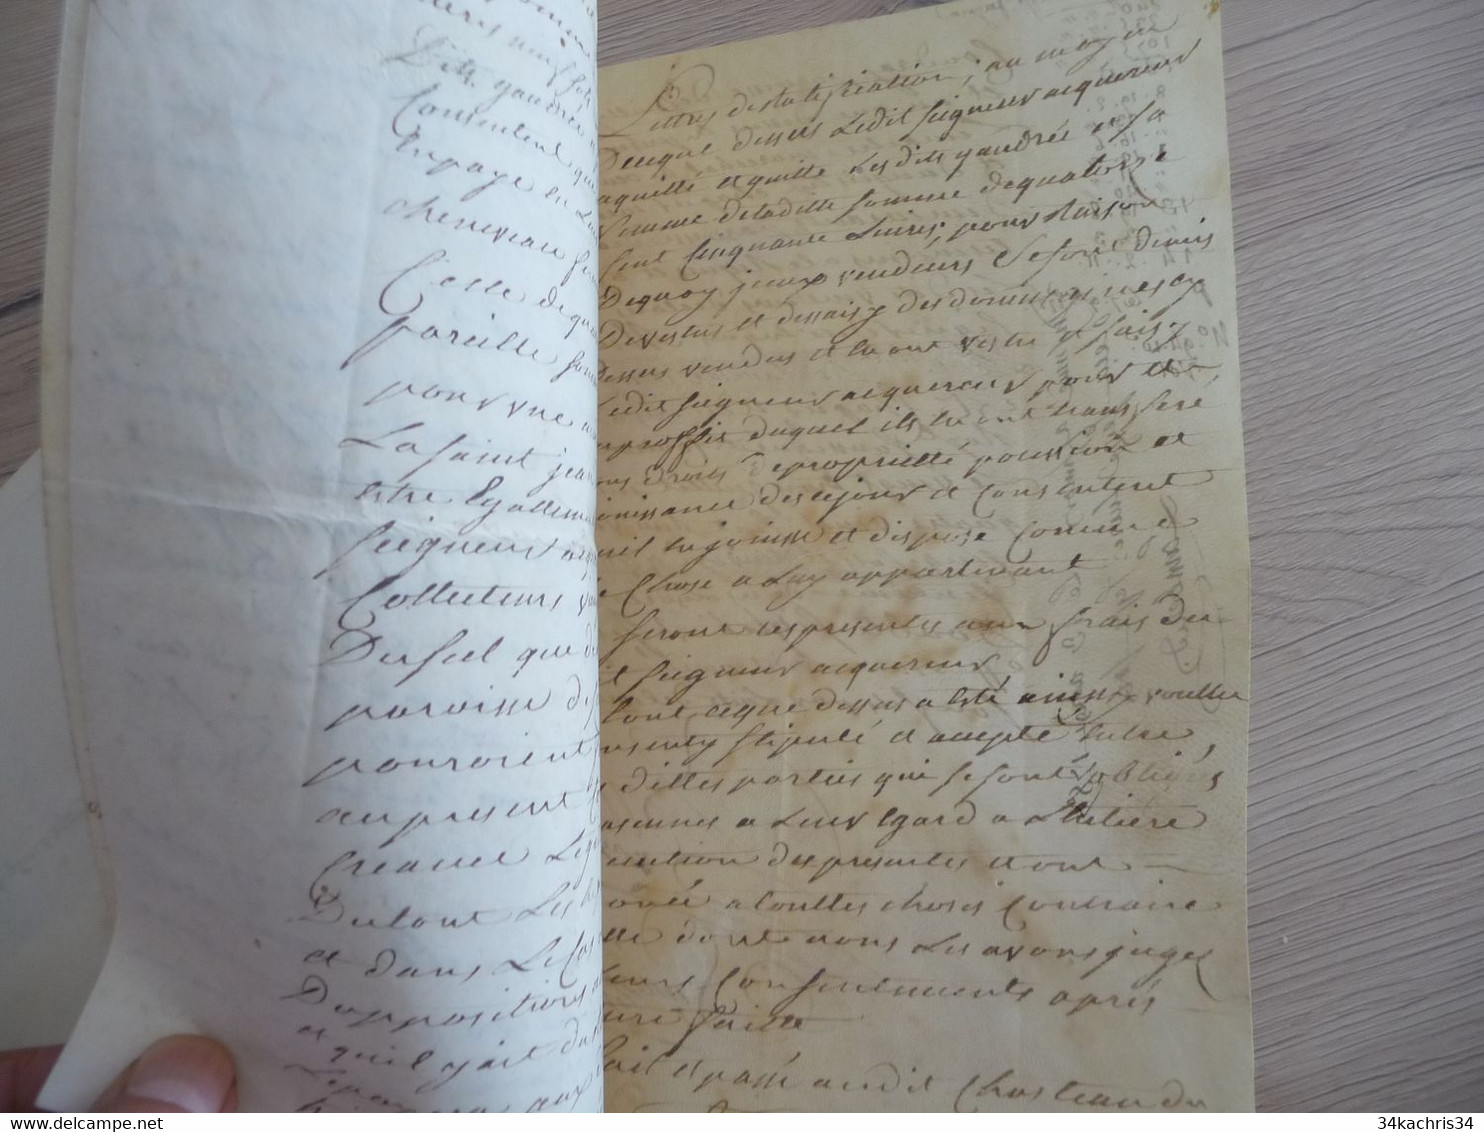 Lettre de ratification pour le moulin de Quincampoix près Savaur et Seuilly sceau 1787